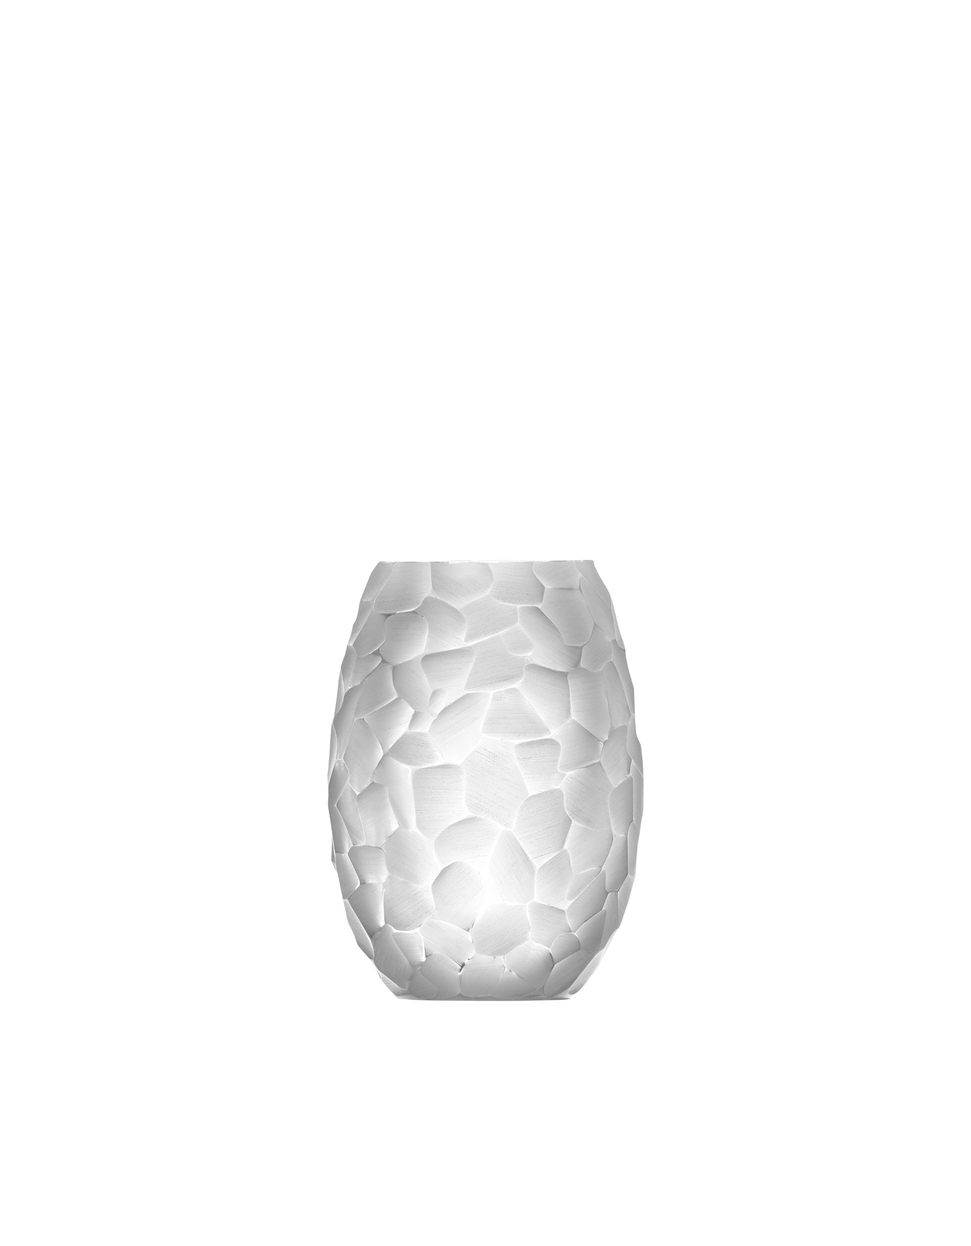 Arctic vase, 13 cm